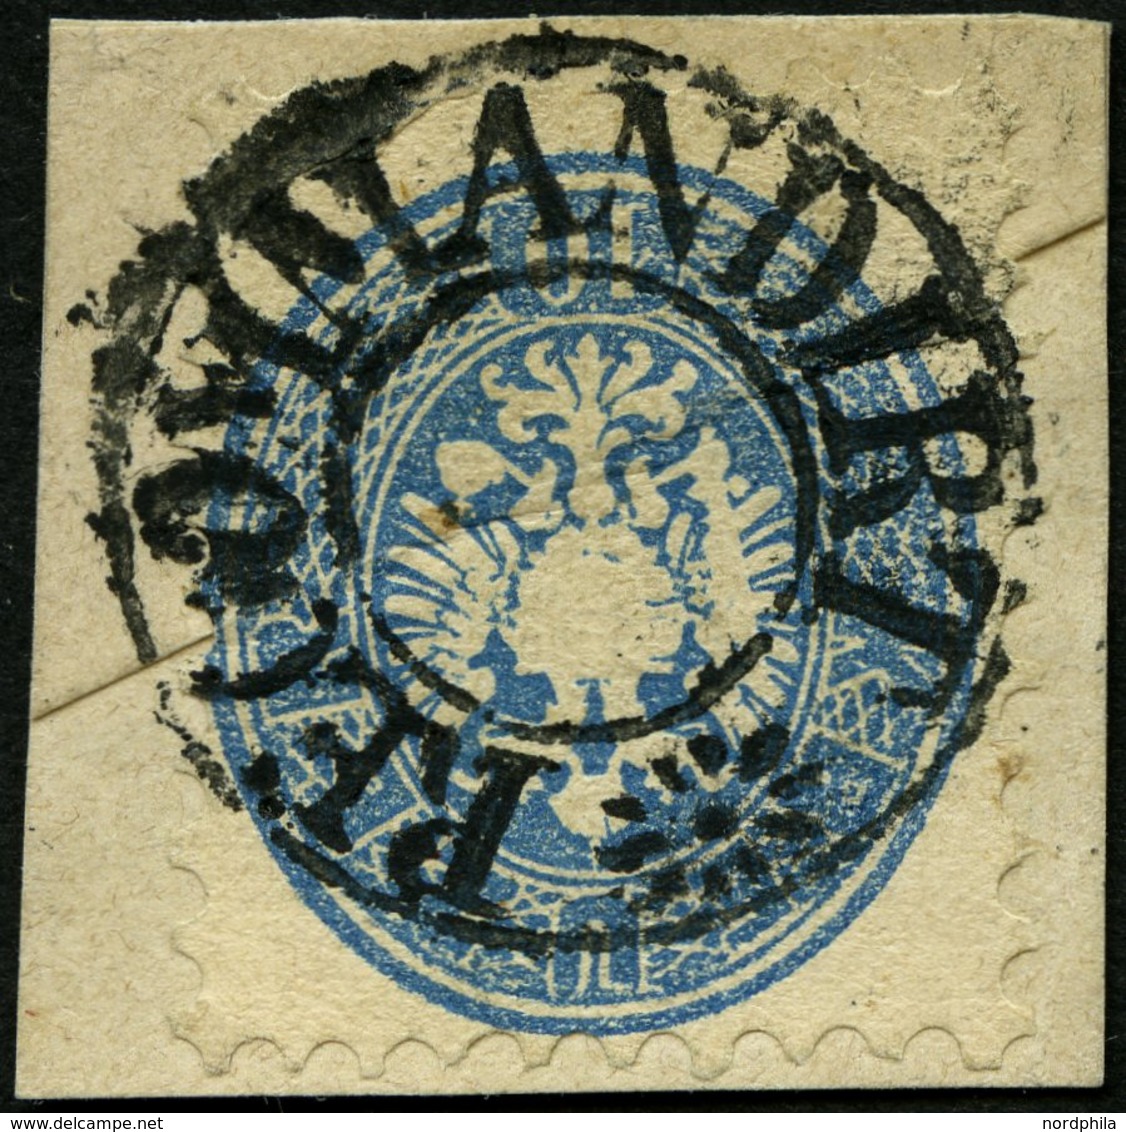 ÖSTERREICH 33 BrfStk, 1863, 10 Kr. Blau, Mit Wz., Mit Seltenem Stummen K2 RECOMMDIRT, Prachtbriefstück, Signiert - Gebraucht